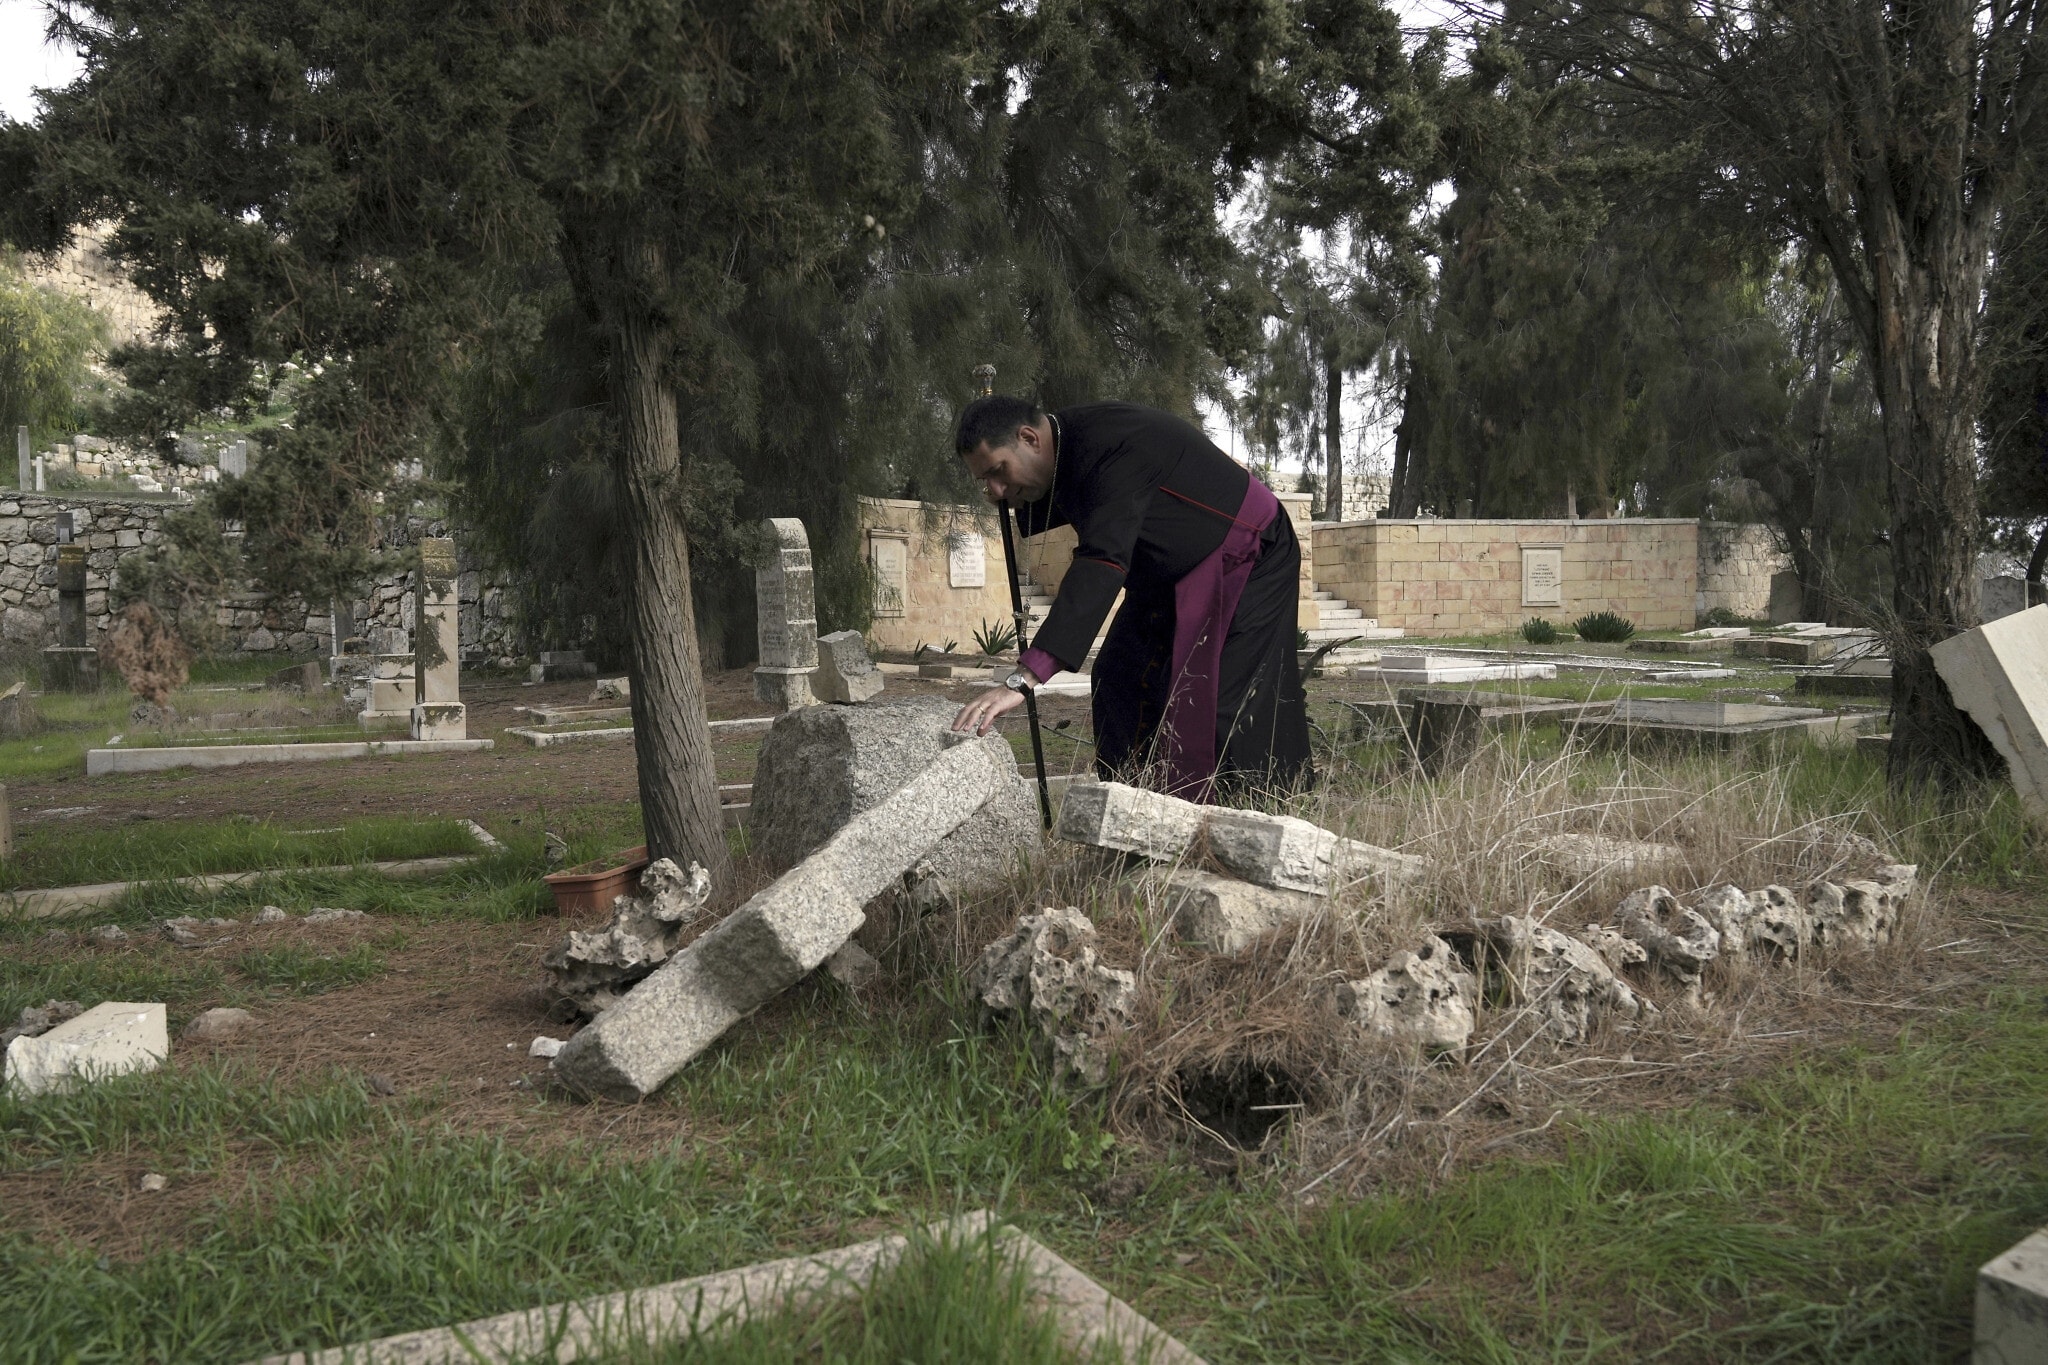 חוסאם נעום, בישוף אנגליקני פלסטיני, נוגע בקבר שהושחת בבית הקברות הפרוטסטנטי ההיסטורי בהר ציון בירושלים, 4 בינואר 2023 (צילום: AP Photo/ Mahmoud Illean)